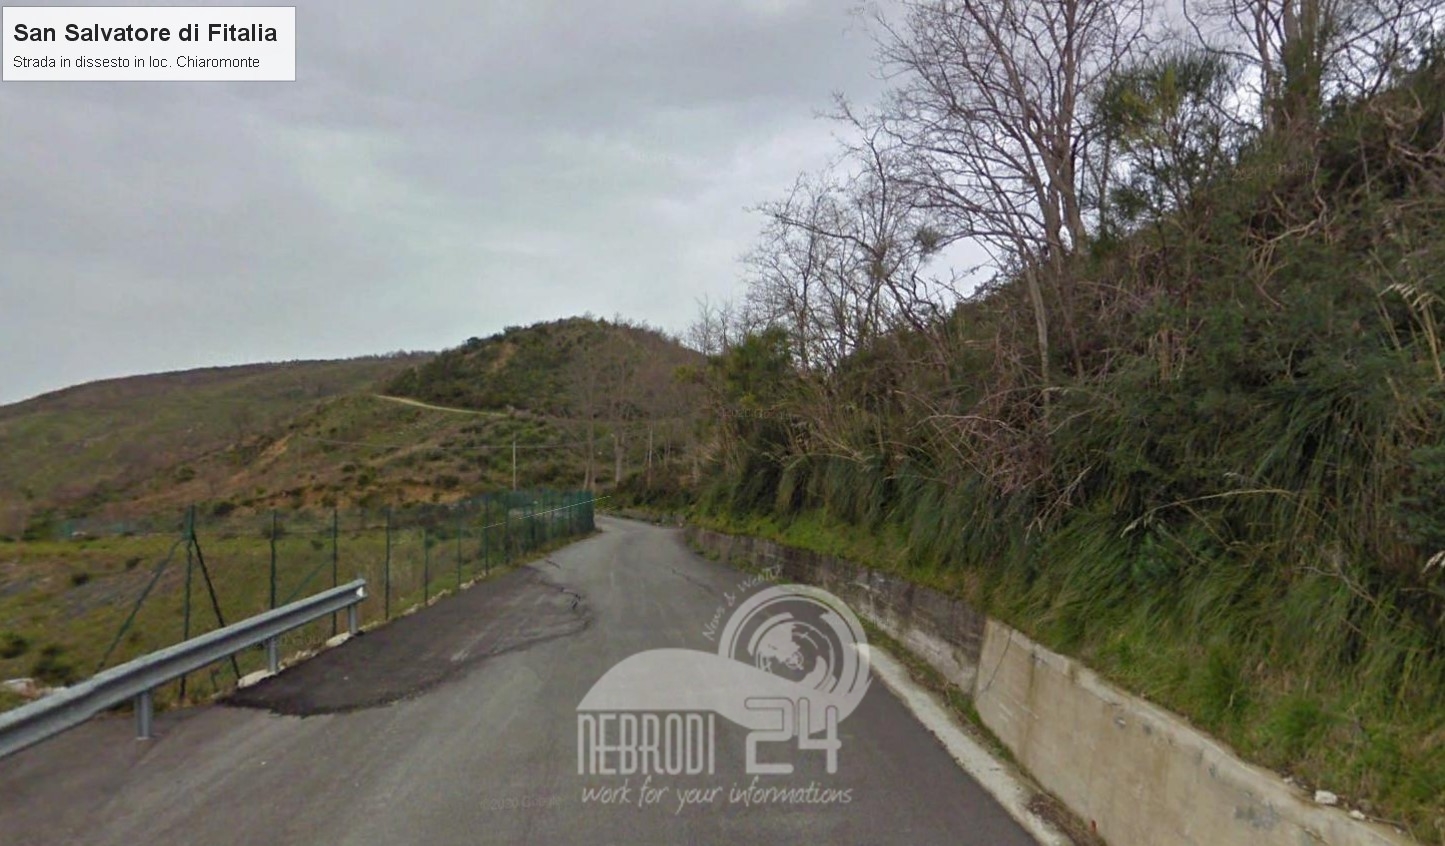 San Salvatore di Fitalia – Dissesto idrogeologico: in gara il progetto per la frana in località Chiaromonte